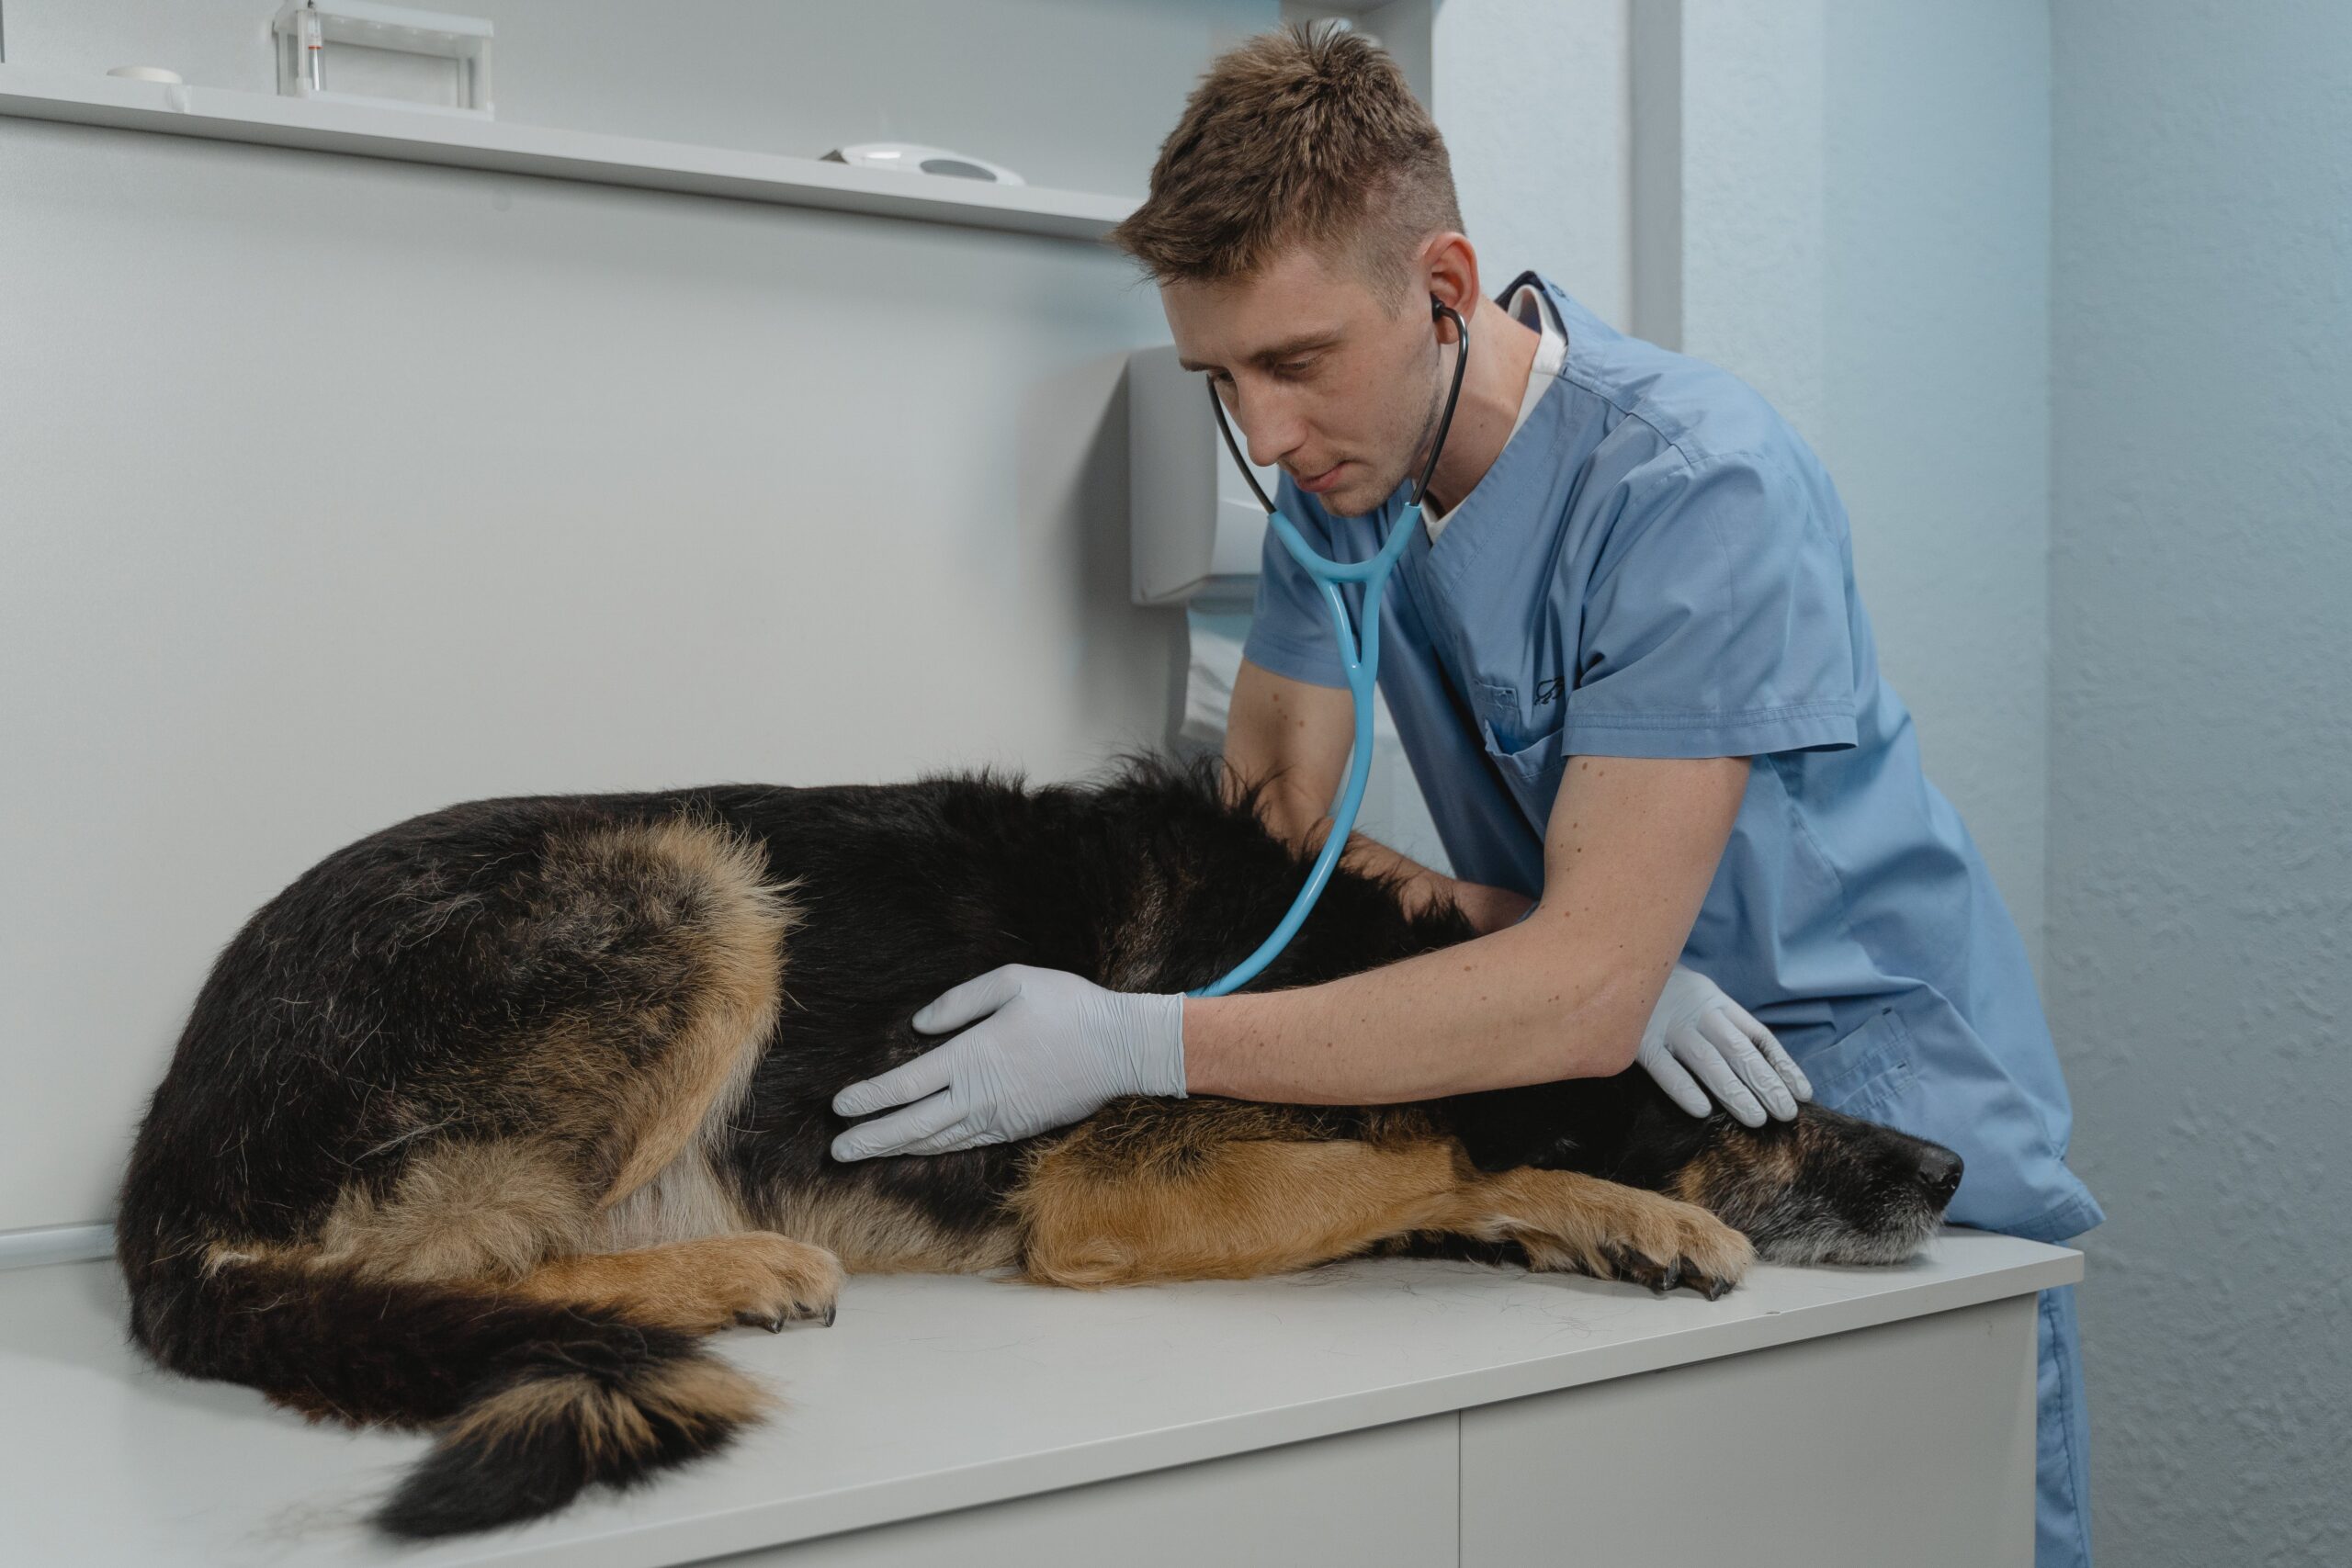 Saiba onde encontrar assistência médica gratuita para animais em São Paulo